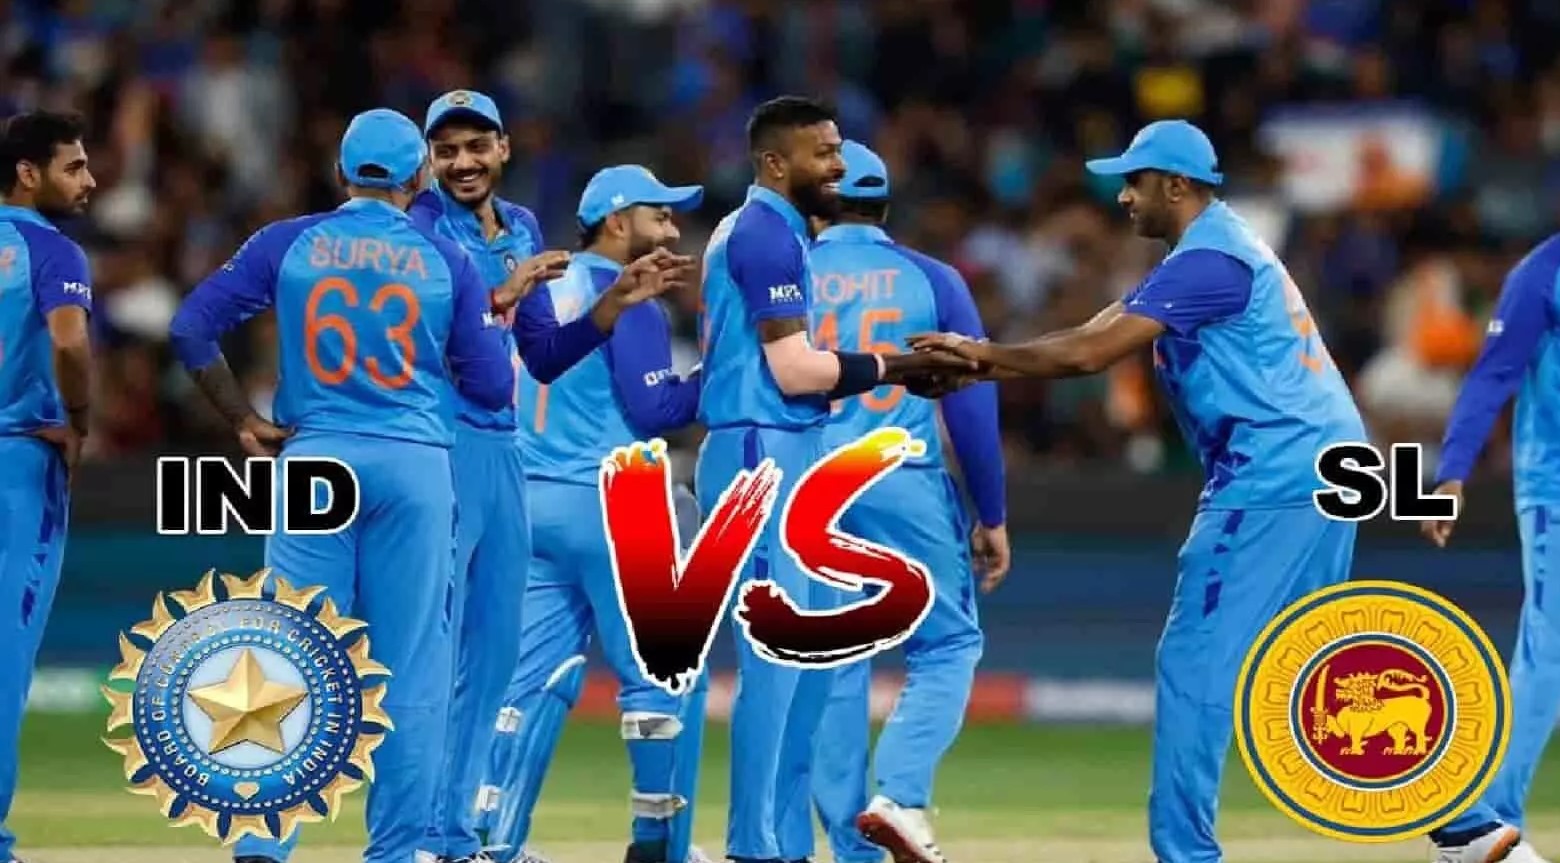 श्रीलंका के खिलाफ तीन मैचों की टी-20 सीरीज जीतने के बाद भारतीय टीम आज वनडे सीरीज का पहला मुकाबला गुवाहाटी में खेलेगी